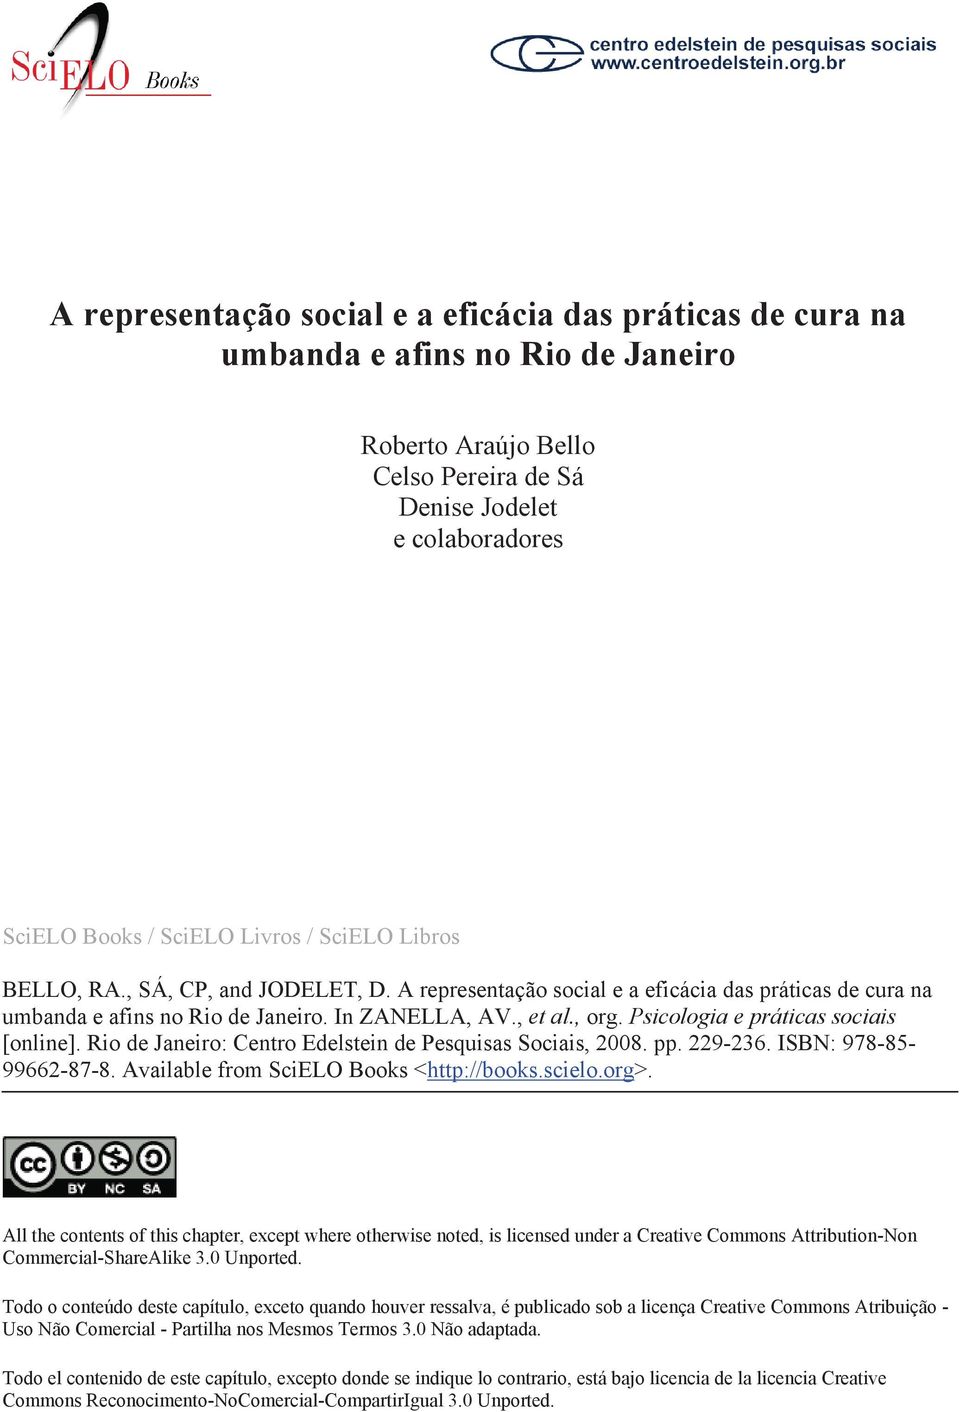 Psicologia e práticas sociais [online]. Rio de Janeiro: Centro Edelstein de Pesquisas Sociais, 2008. pp. 229-236. ISBN: 978-85- 99662-87-8. Available from SciELO Books <http://books.scielo.org>.